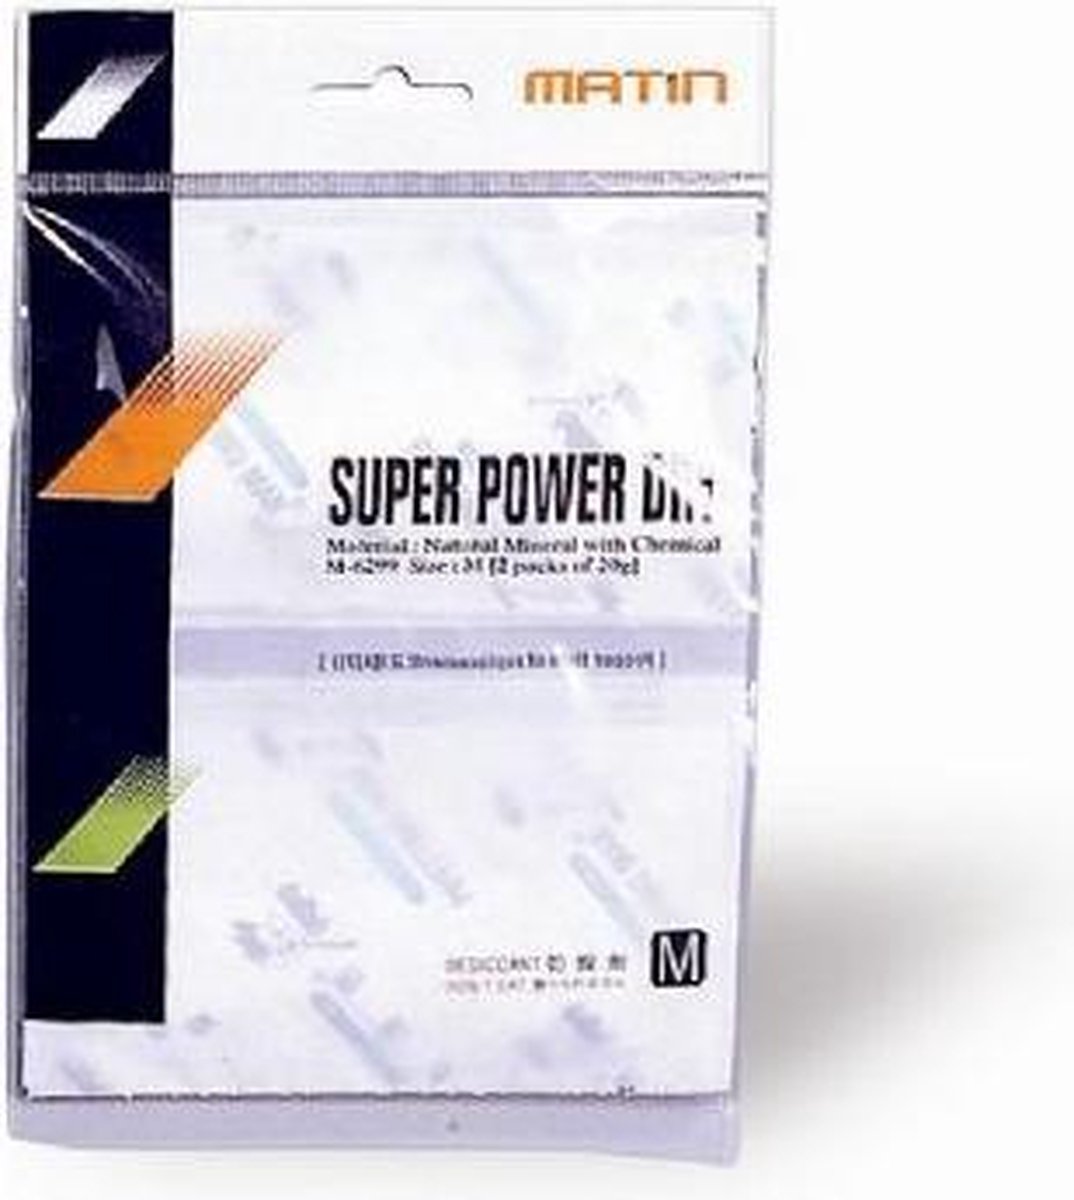 Matin Super Power Dry M-6299 - Matin